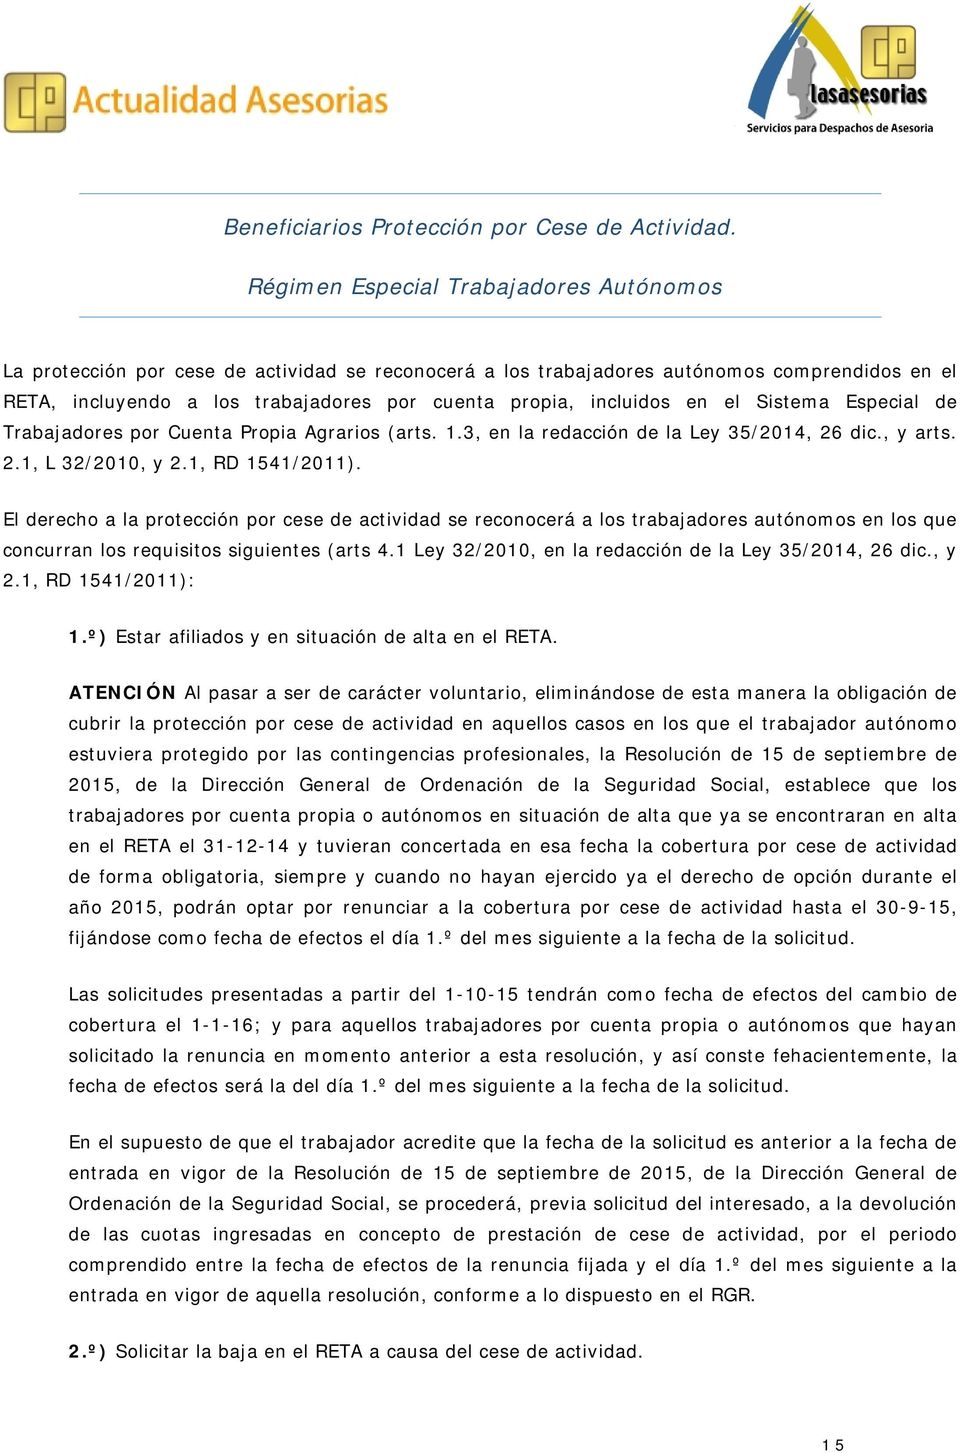 incluidos en el Sistema Especial de Trabajadores por Cuenta Propia Agrarios (arts. 1.3, en la redacción de la Ley 35/2014, 26 dic., y arts. 2.1, L 32/2010, y 2.1, RD 1541/2011).